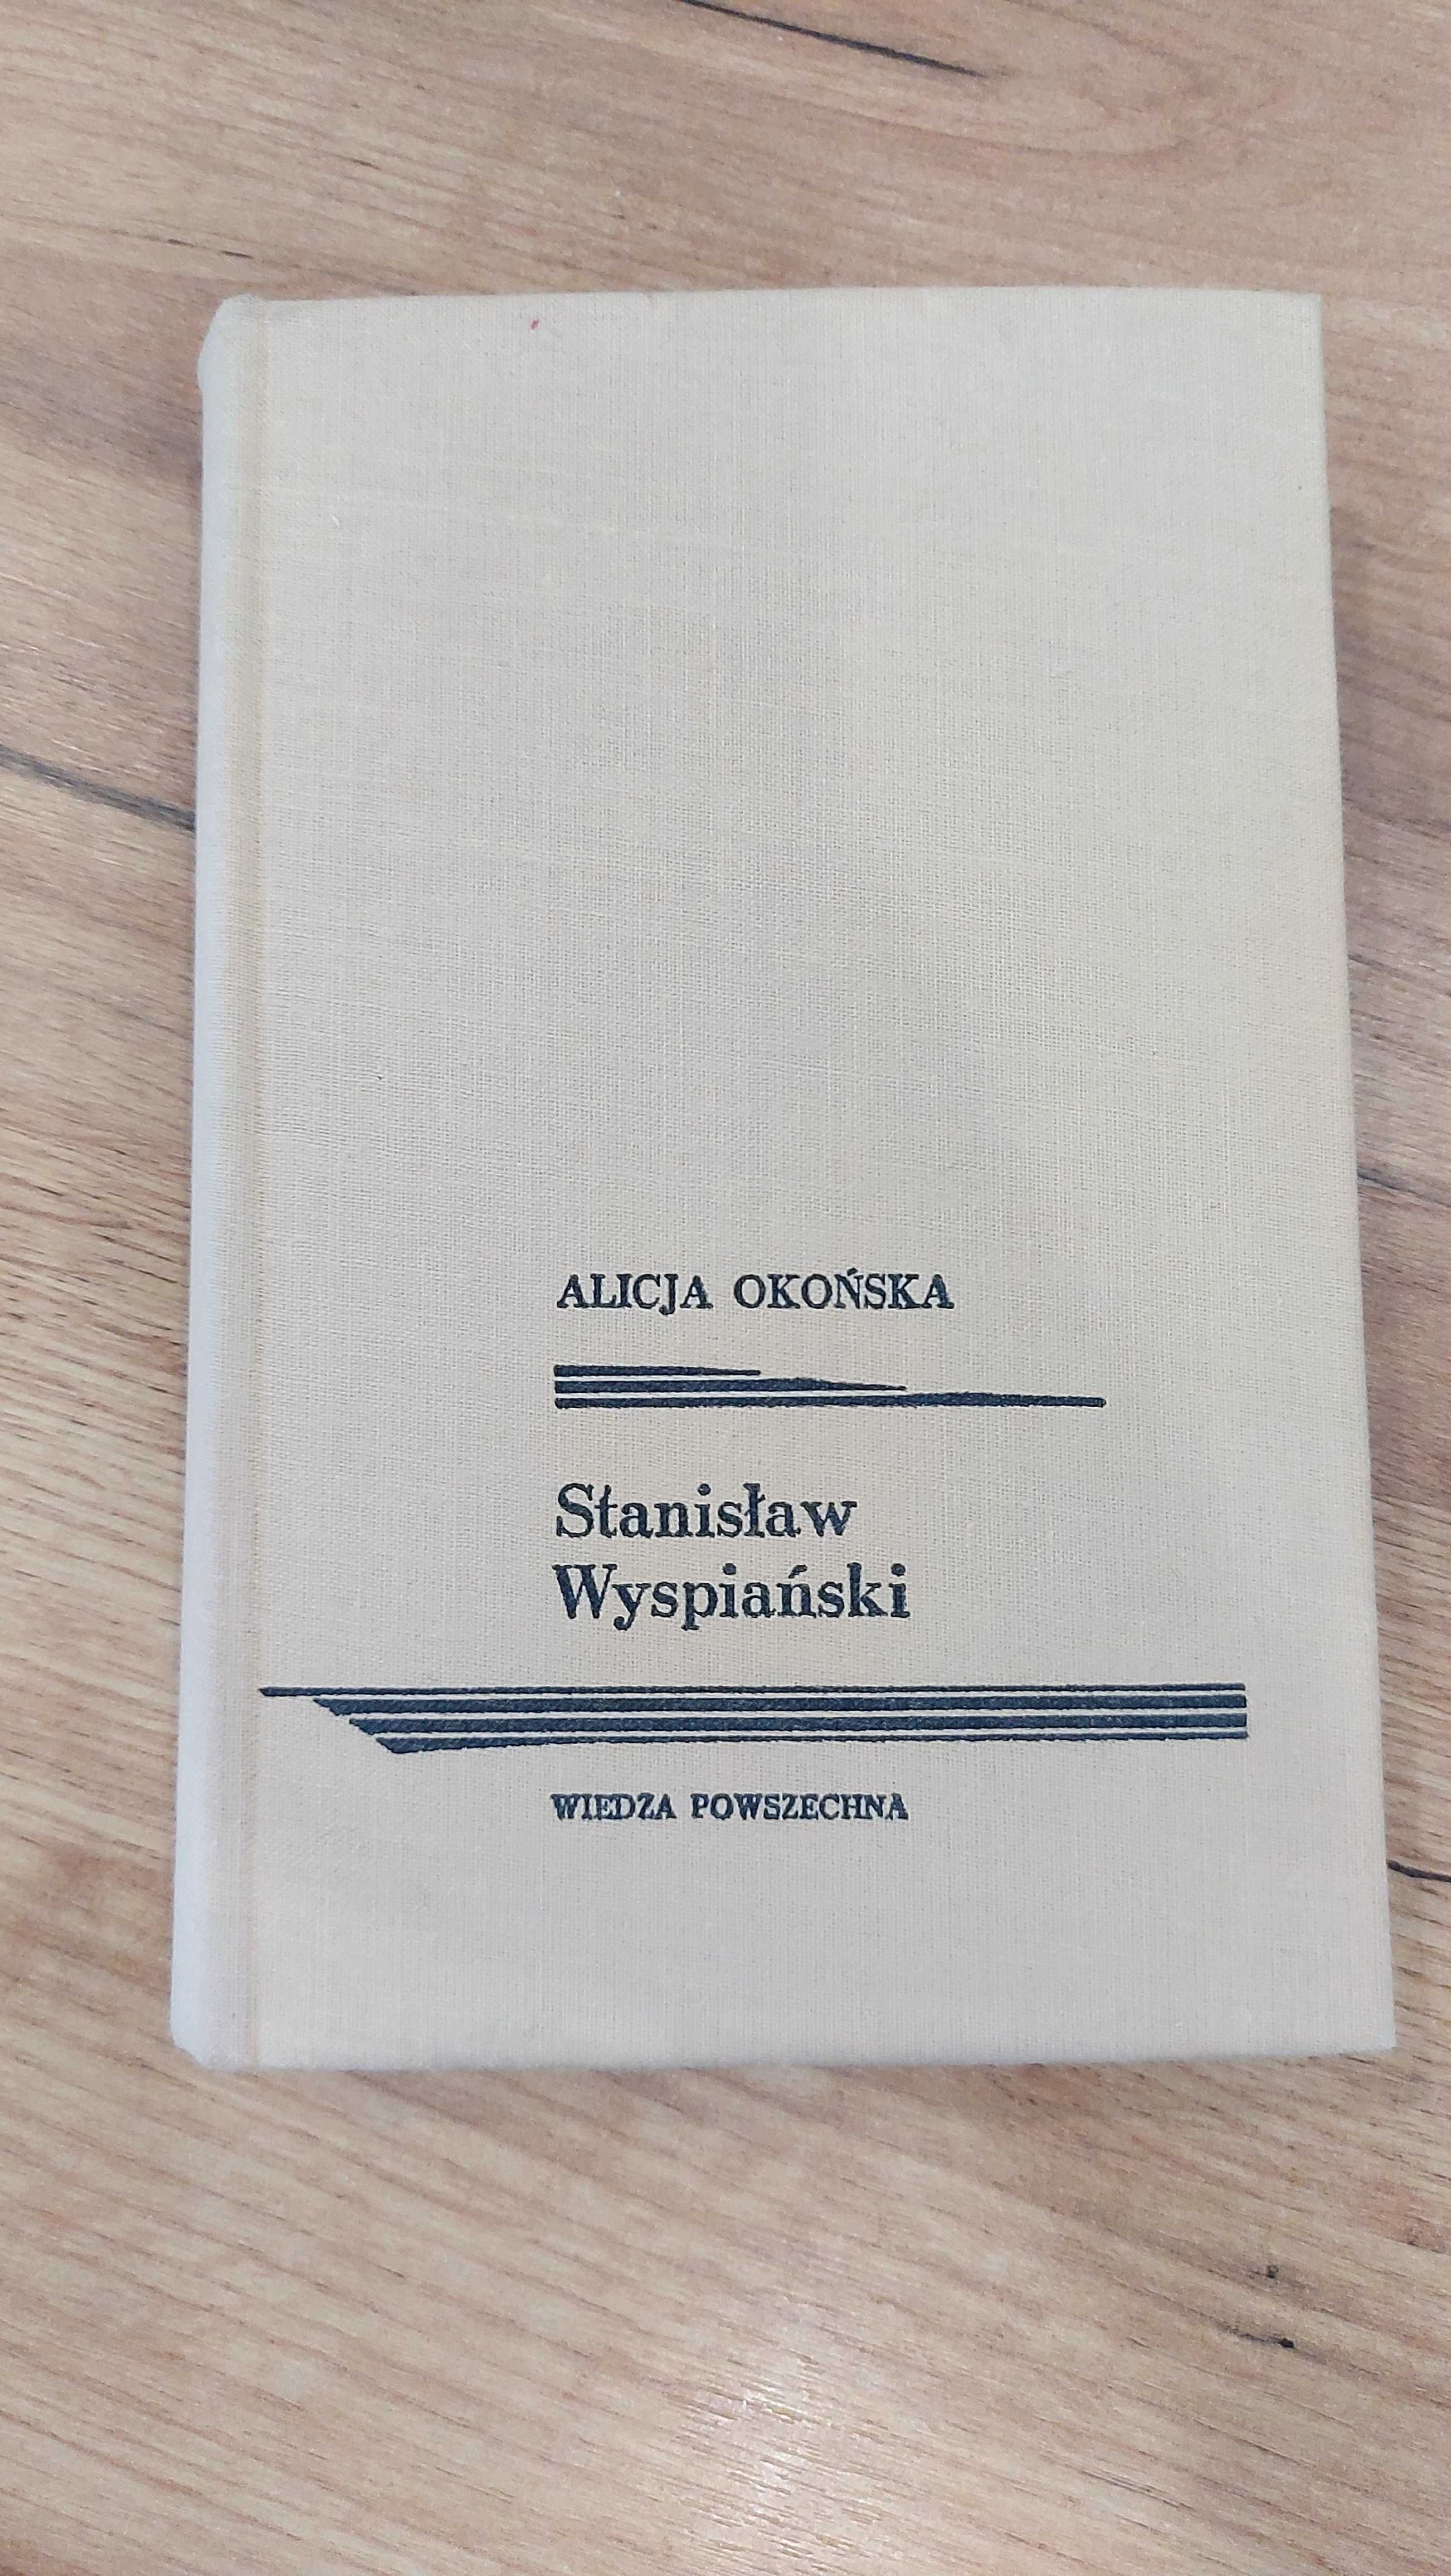 Książka Alicja Okońska Stanisław Wyspiański